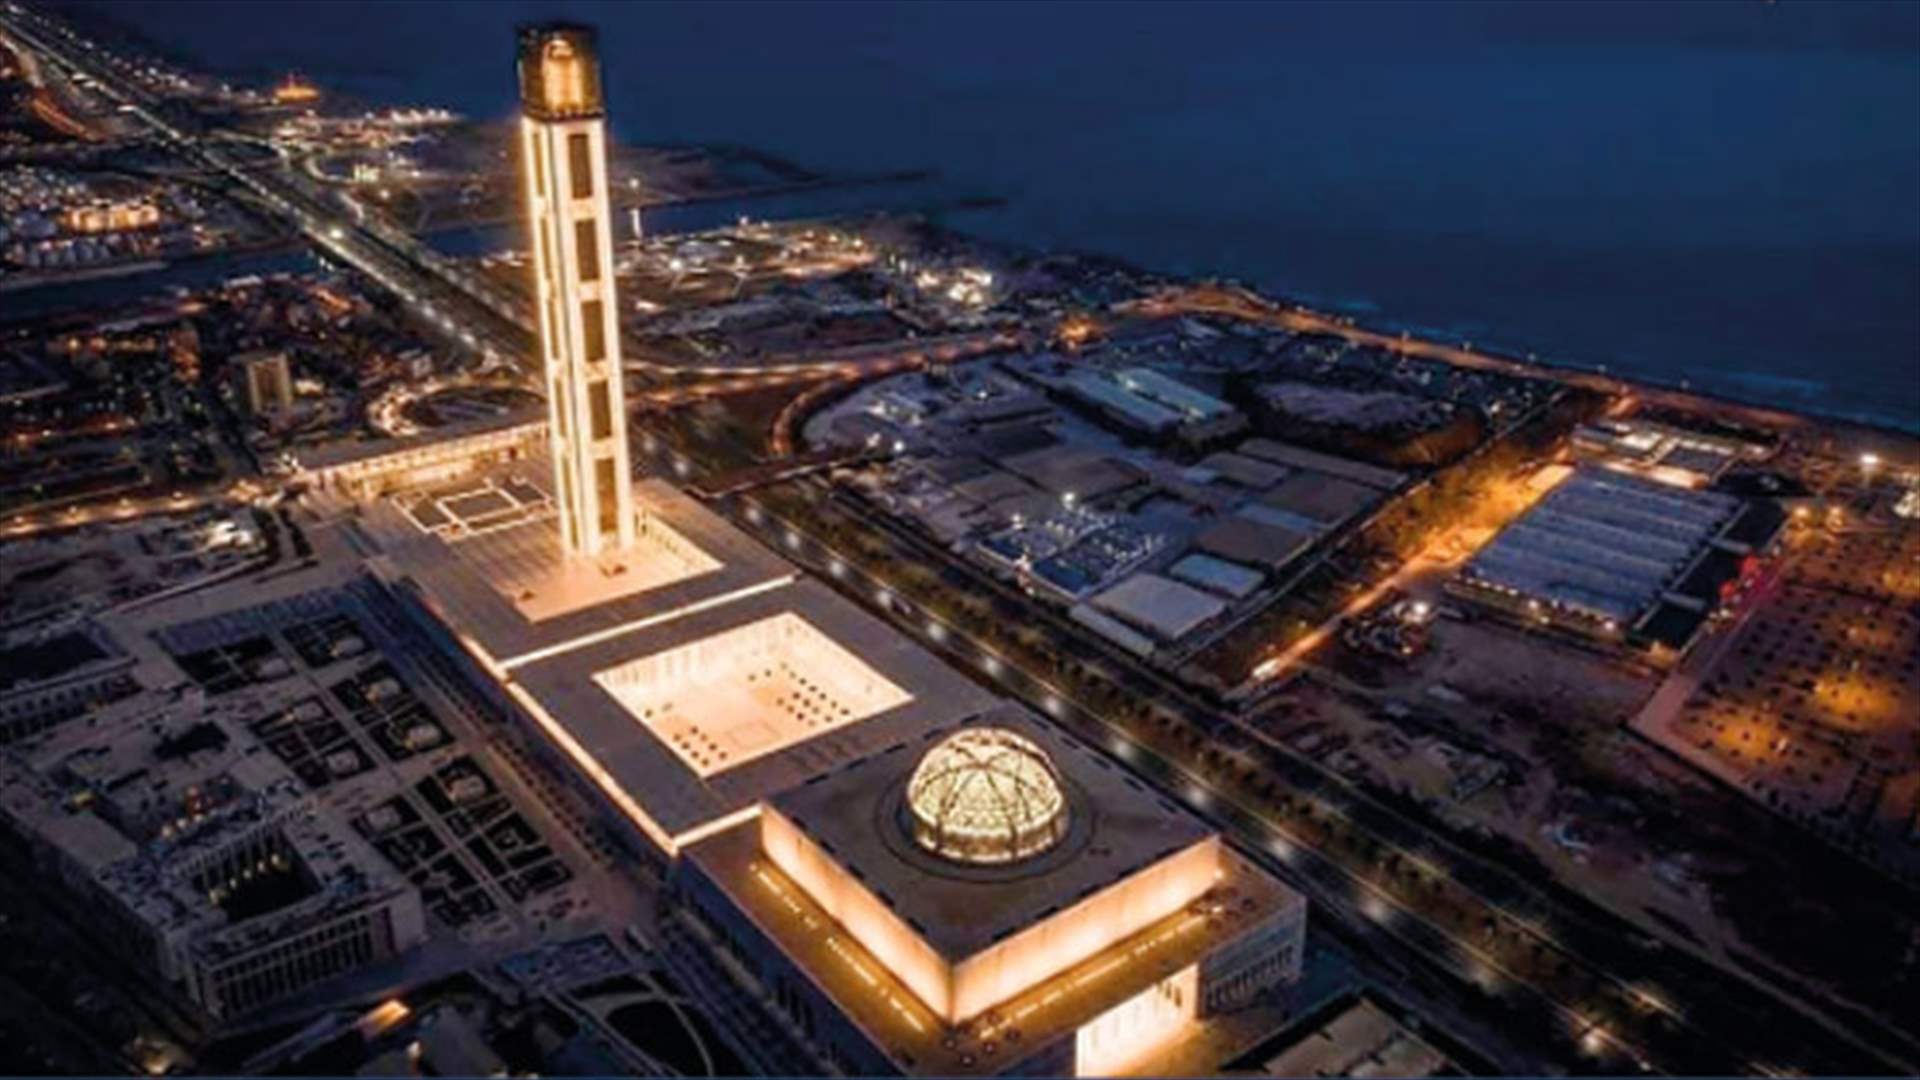 الجزائر تفتح رسميا ثالث أكبر مسجد في العالم... وهذه التفاصيل